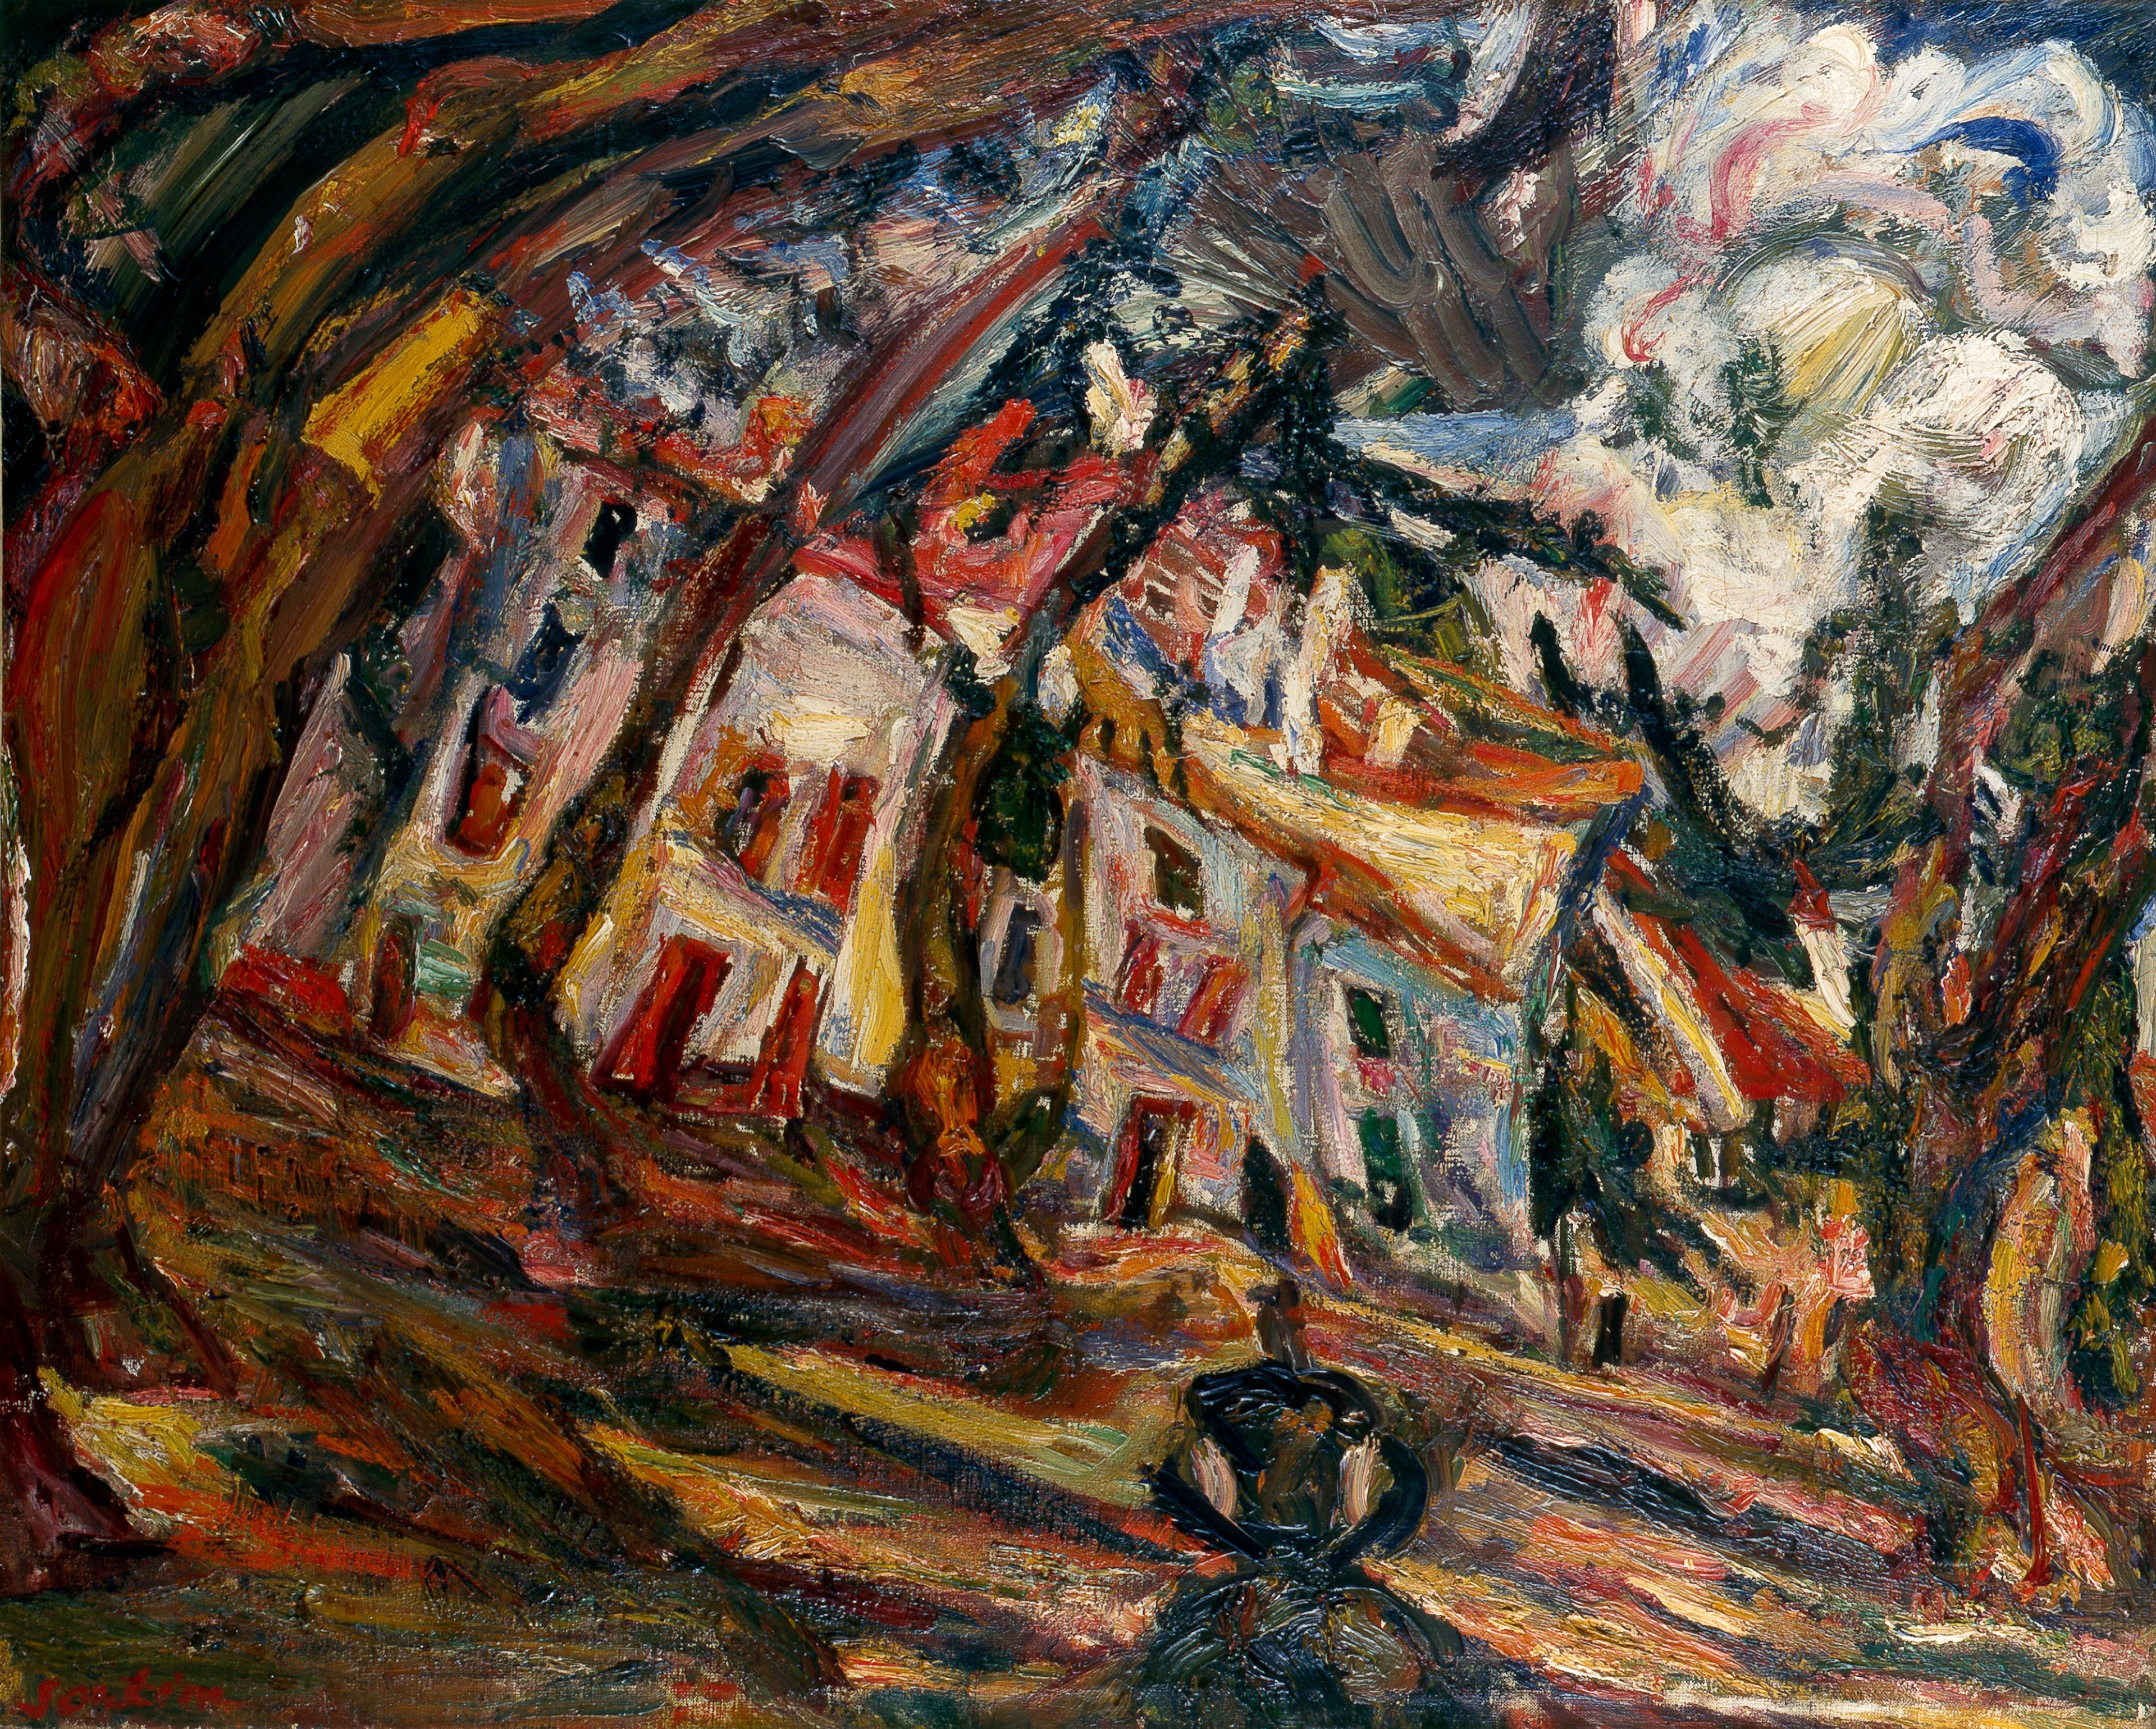 La Place du village, Céret (Village Square at Céret), 1920, oil on canvas, 76 x 94 cm